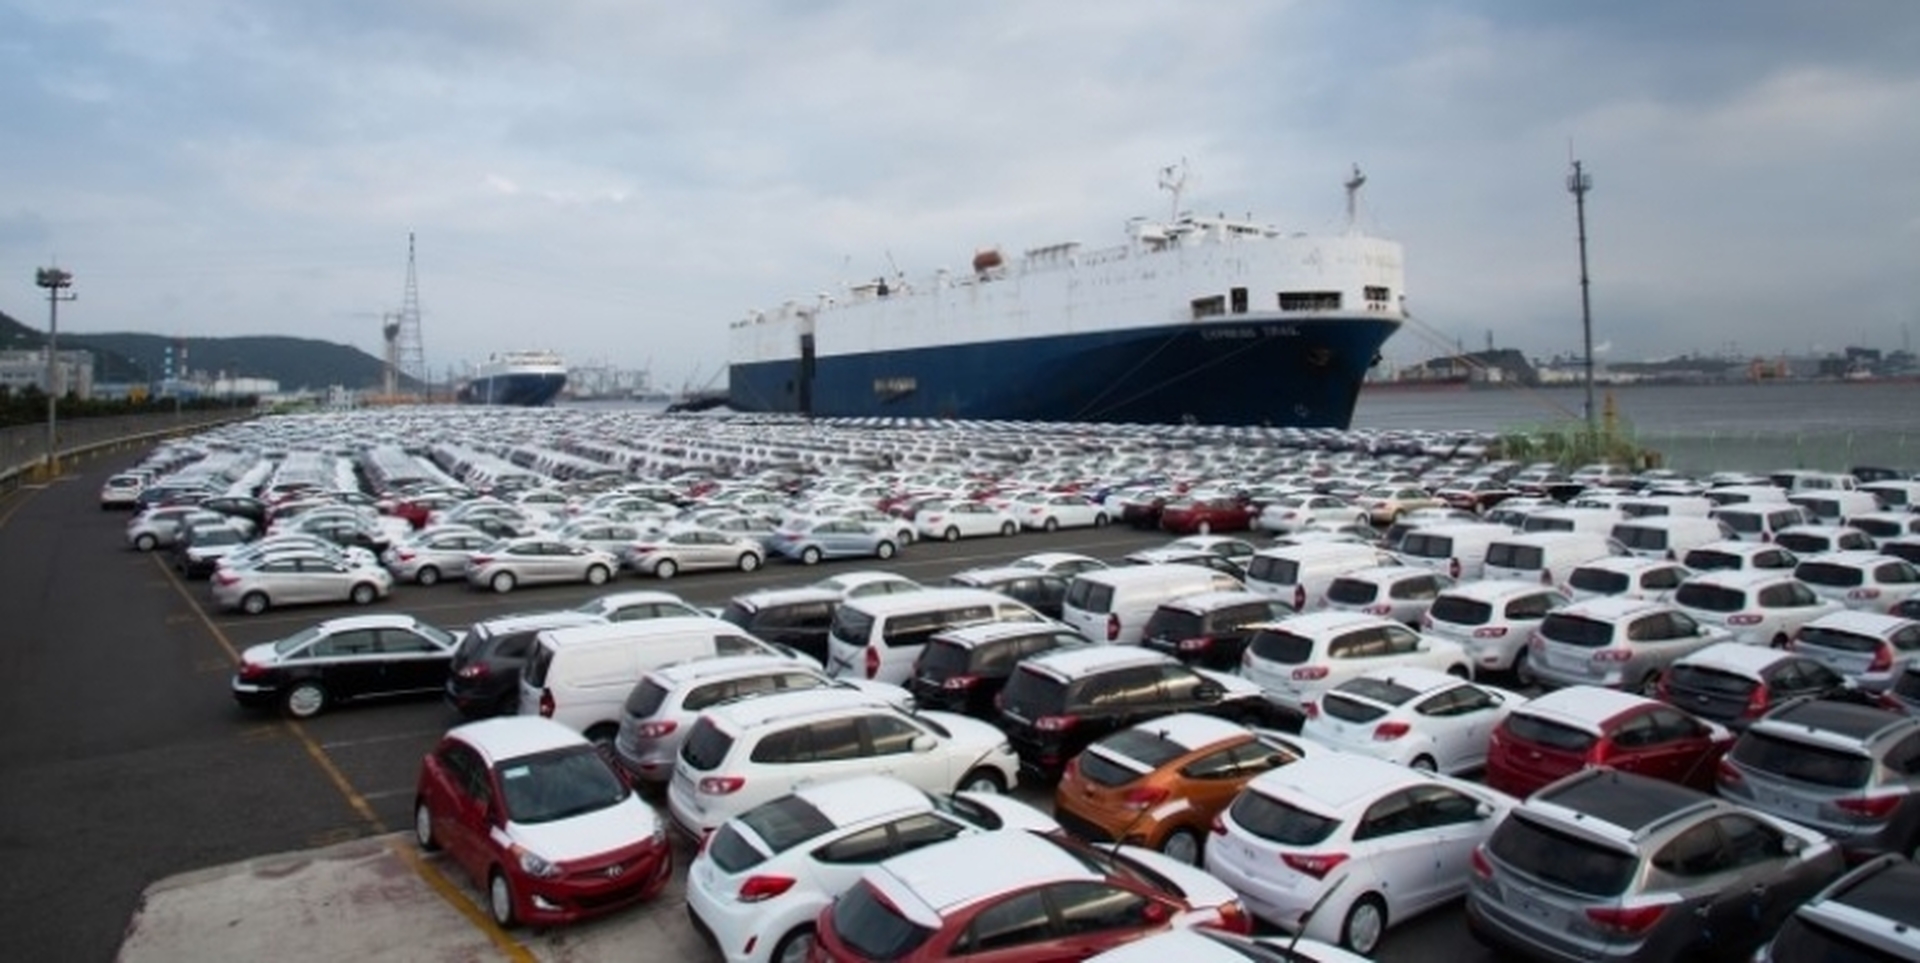 Доставка машин из японии в россию. Машины в порту. Японские машины. Японские автомобили на порту. Корабль с автомобилями.